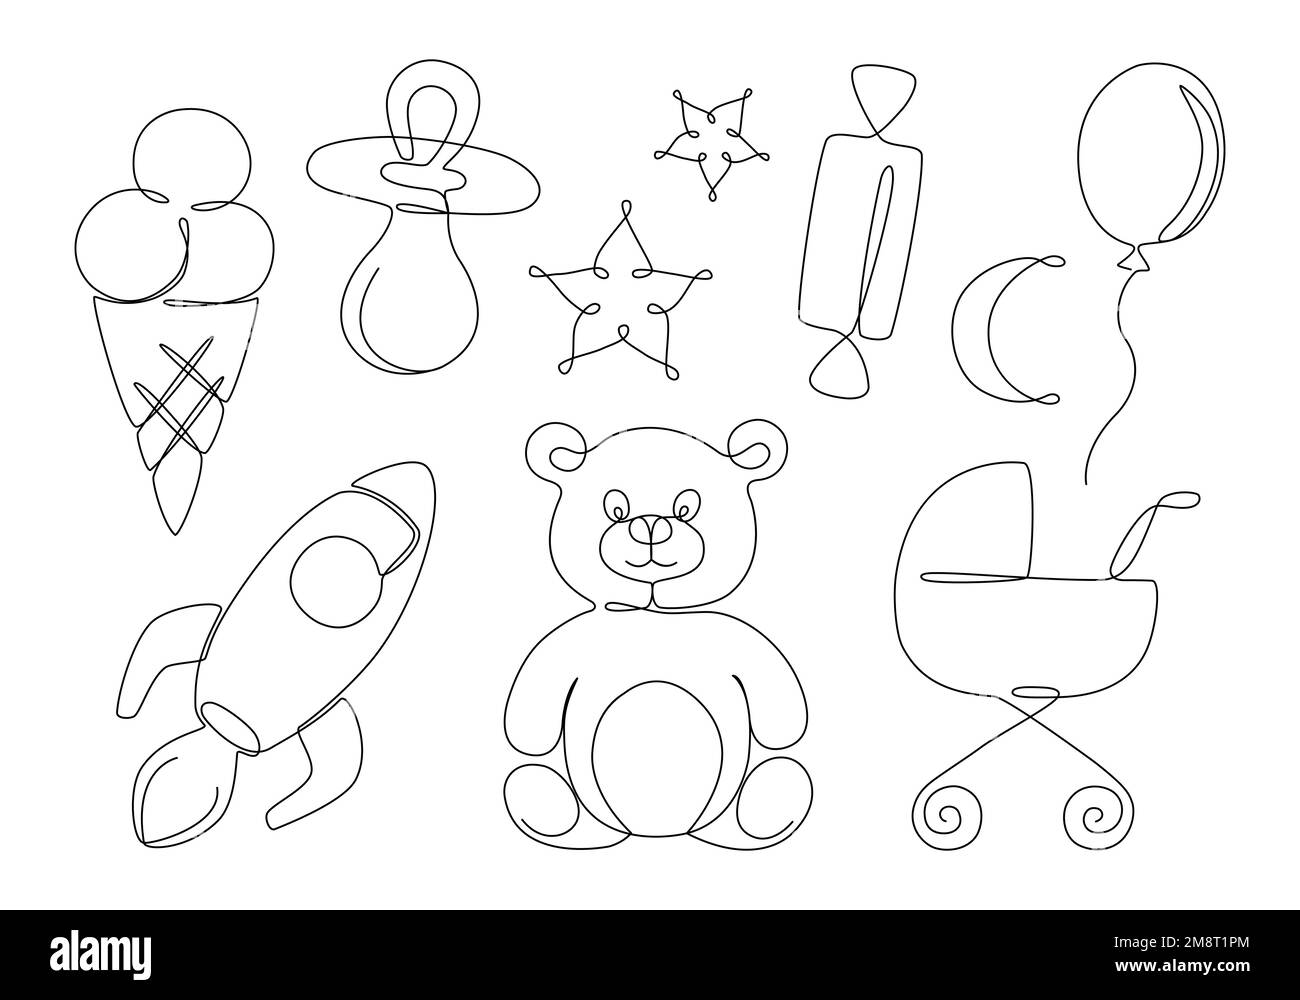 Ein-Linien-Zeichenelemente für Babys. Sammlung von niedlichen Gegenständen und Spielzeugen für Kinder. Bär, Schnuller, Kutsche. Vektordarstellung Stock Vektor